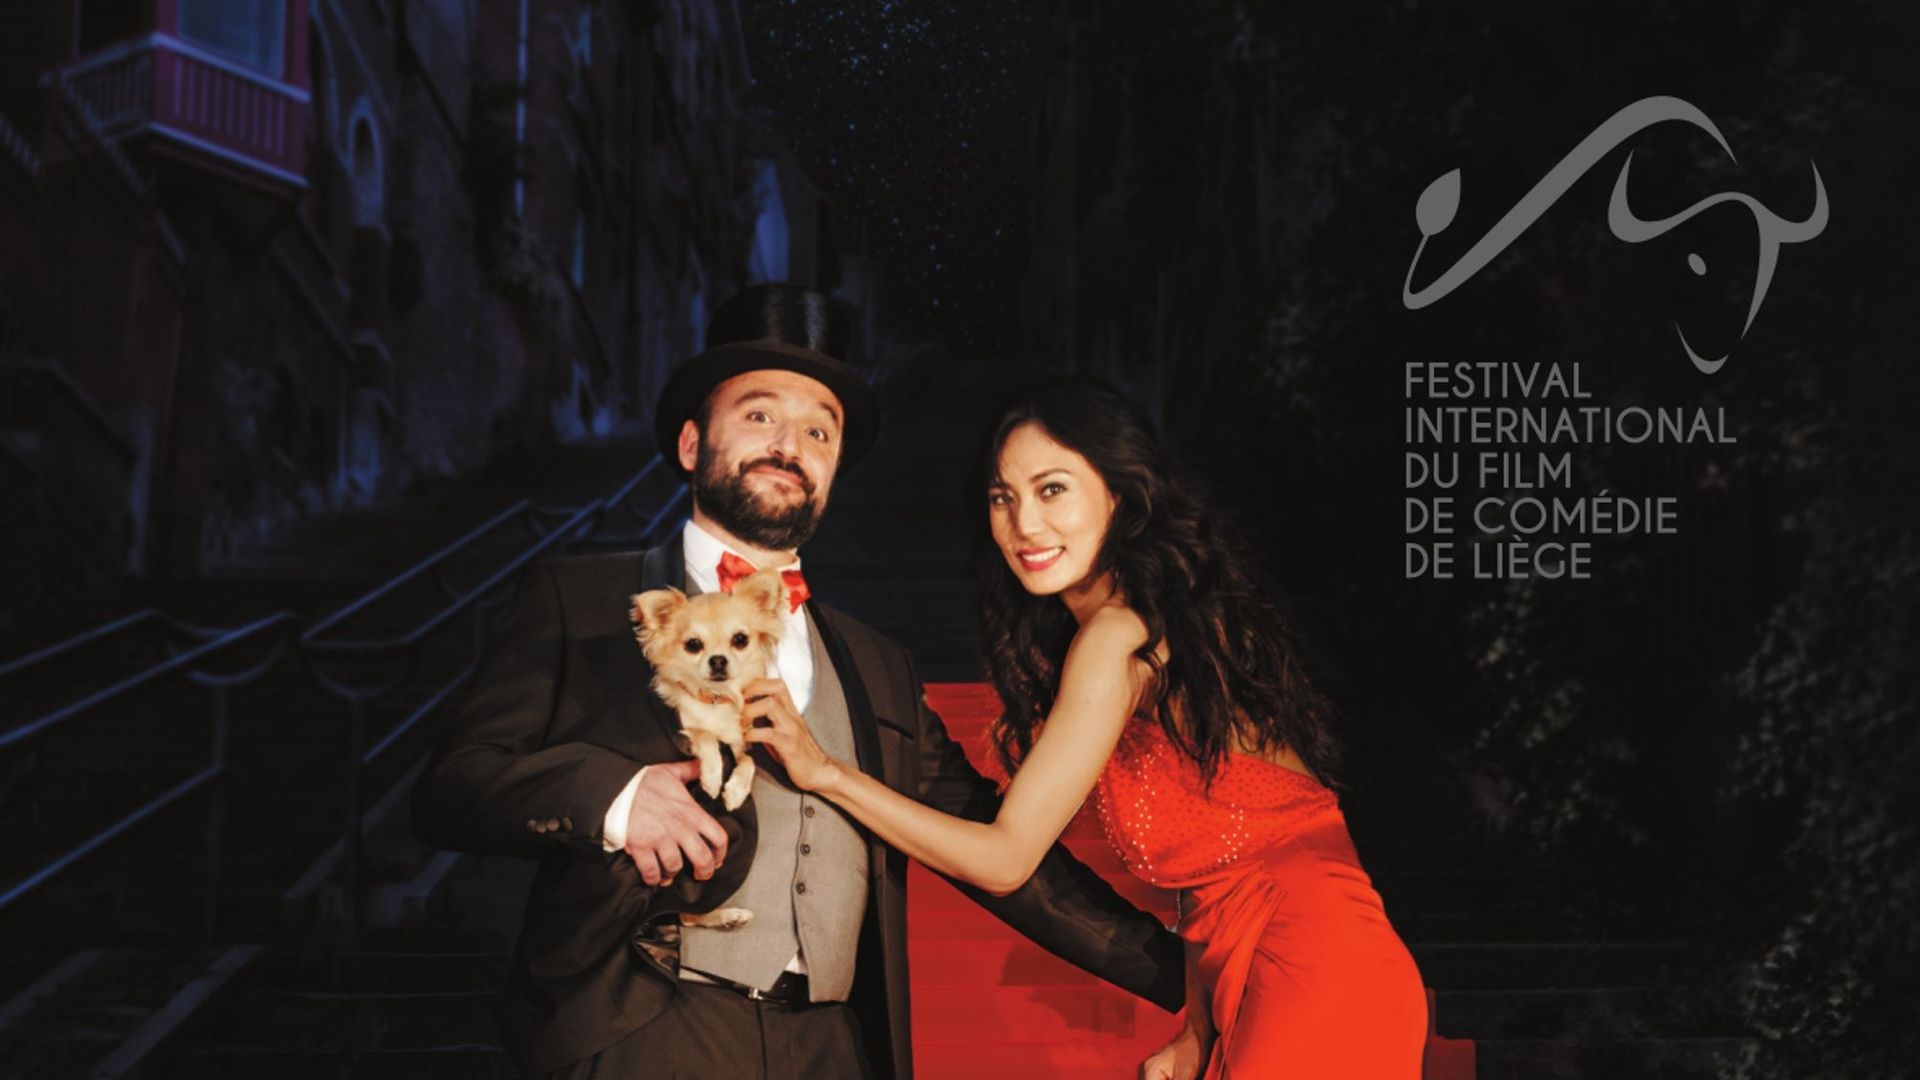 Affiche de la 6ème édition du Festival International du Film de Comédie de Liège (FIFCL) 2021